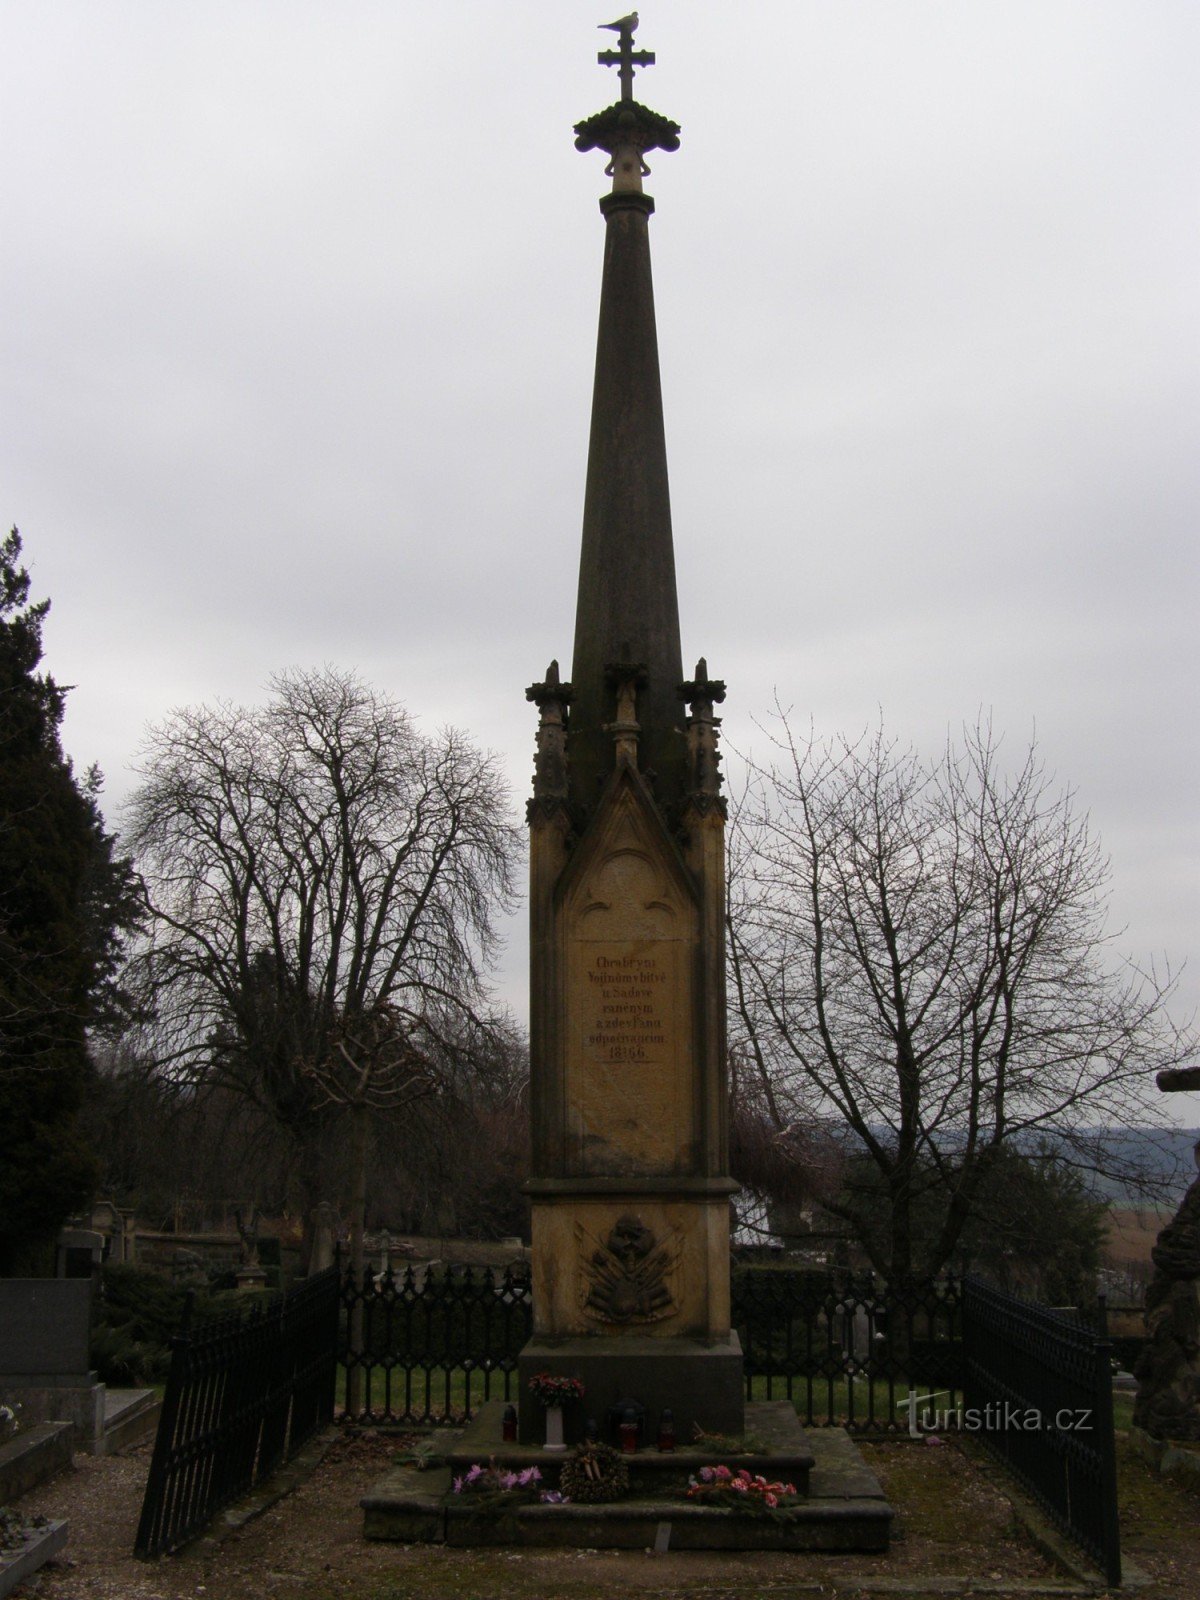 Gothard - emlékmű a porosz-osztrák háború áldozatainak